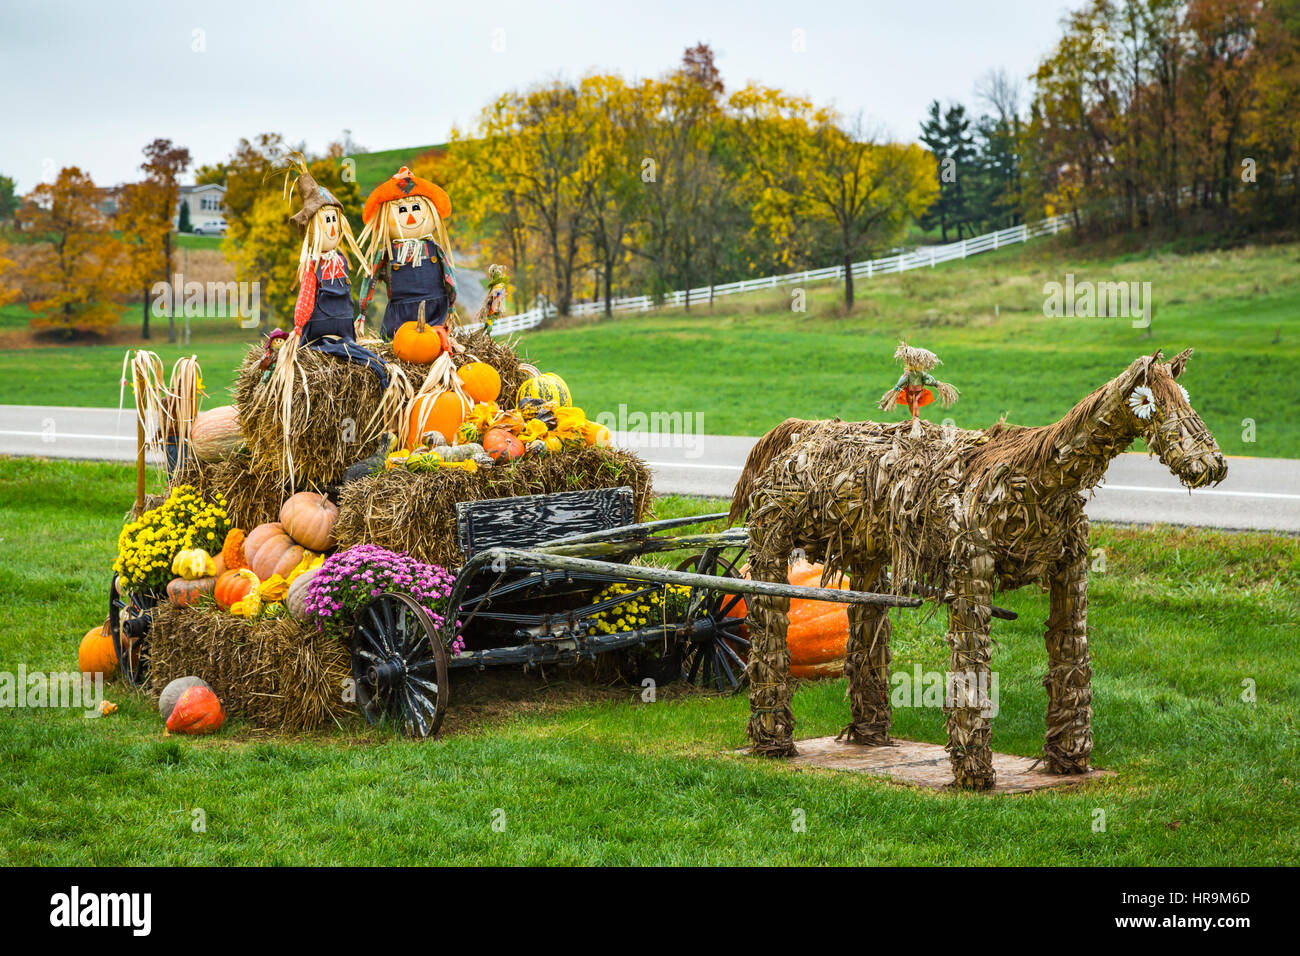 A fall display at a farm produce market near Walnut Creek, Ohio, USA. Stock Photo